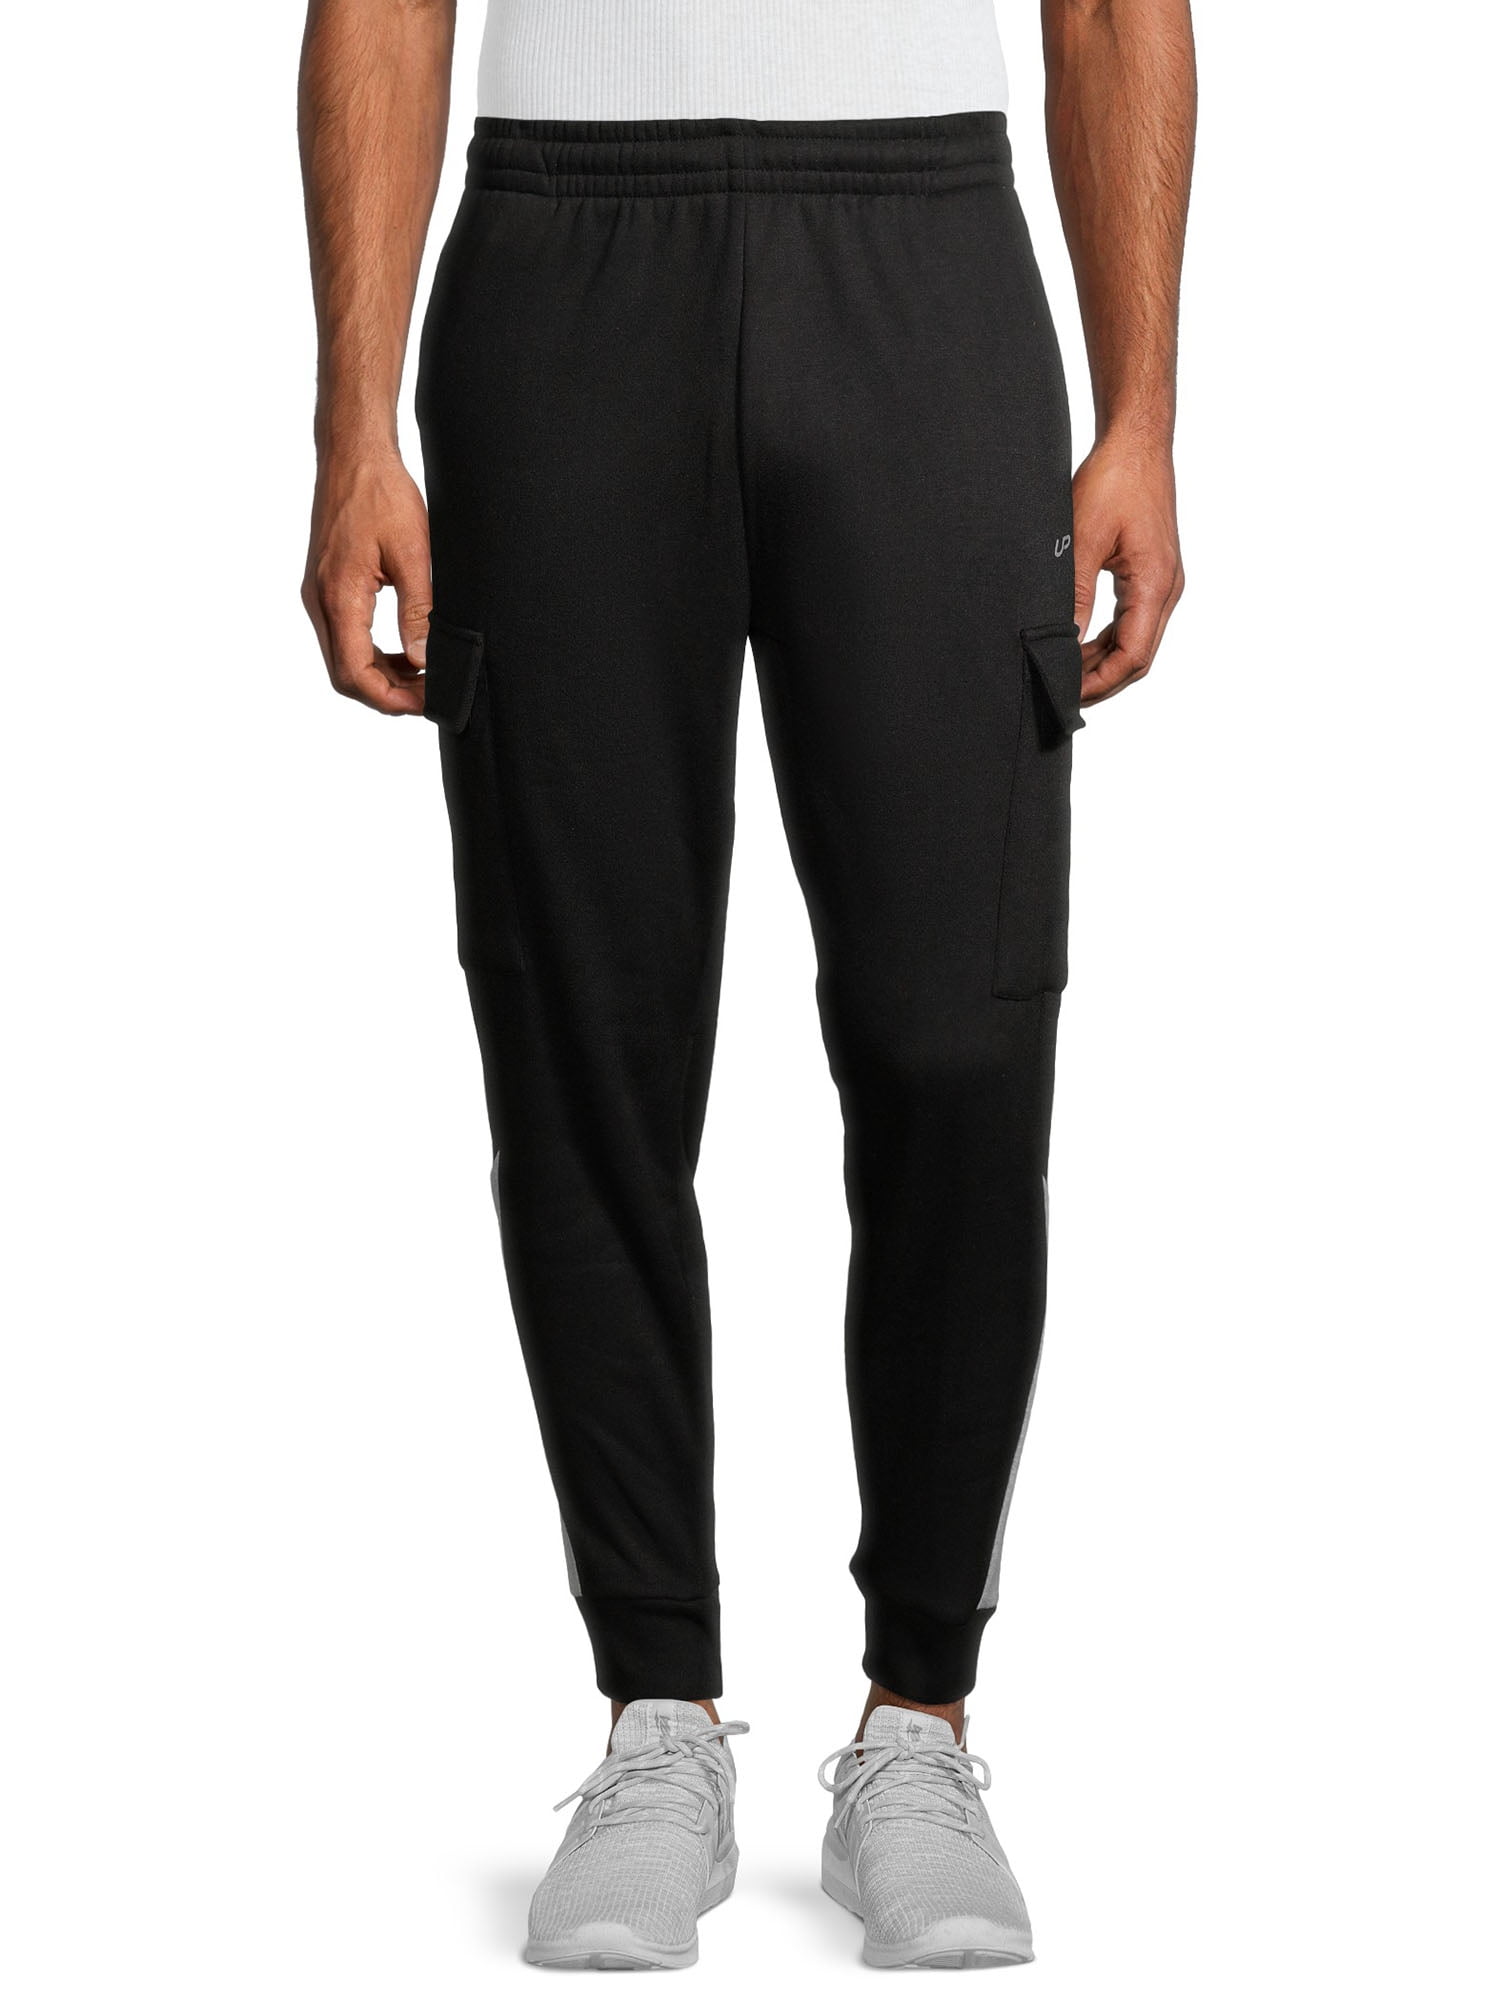 Unipro Men's Cargo Fleece Sweatpants with Single Side Stripe - Walmart.com